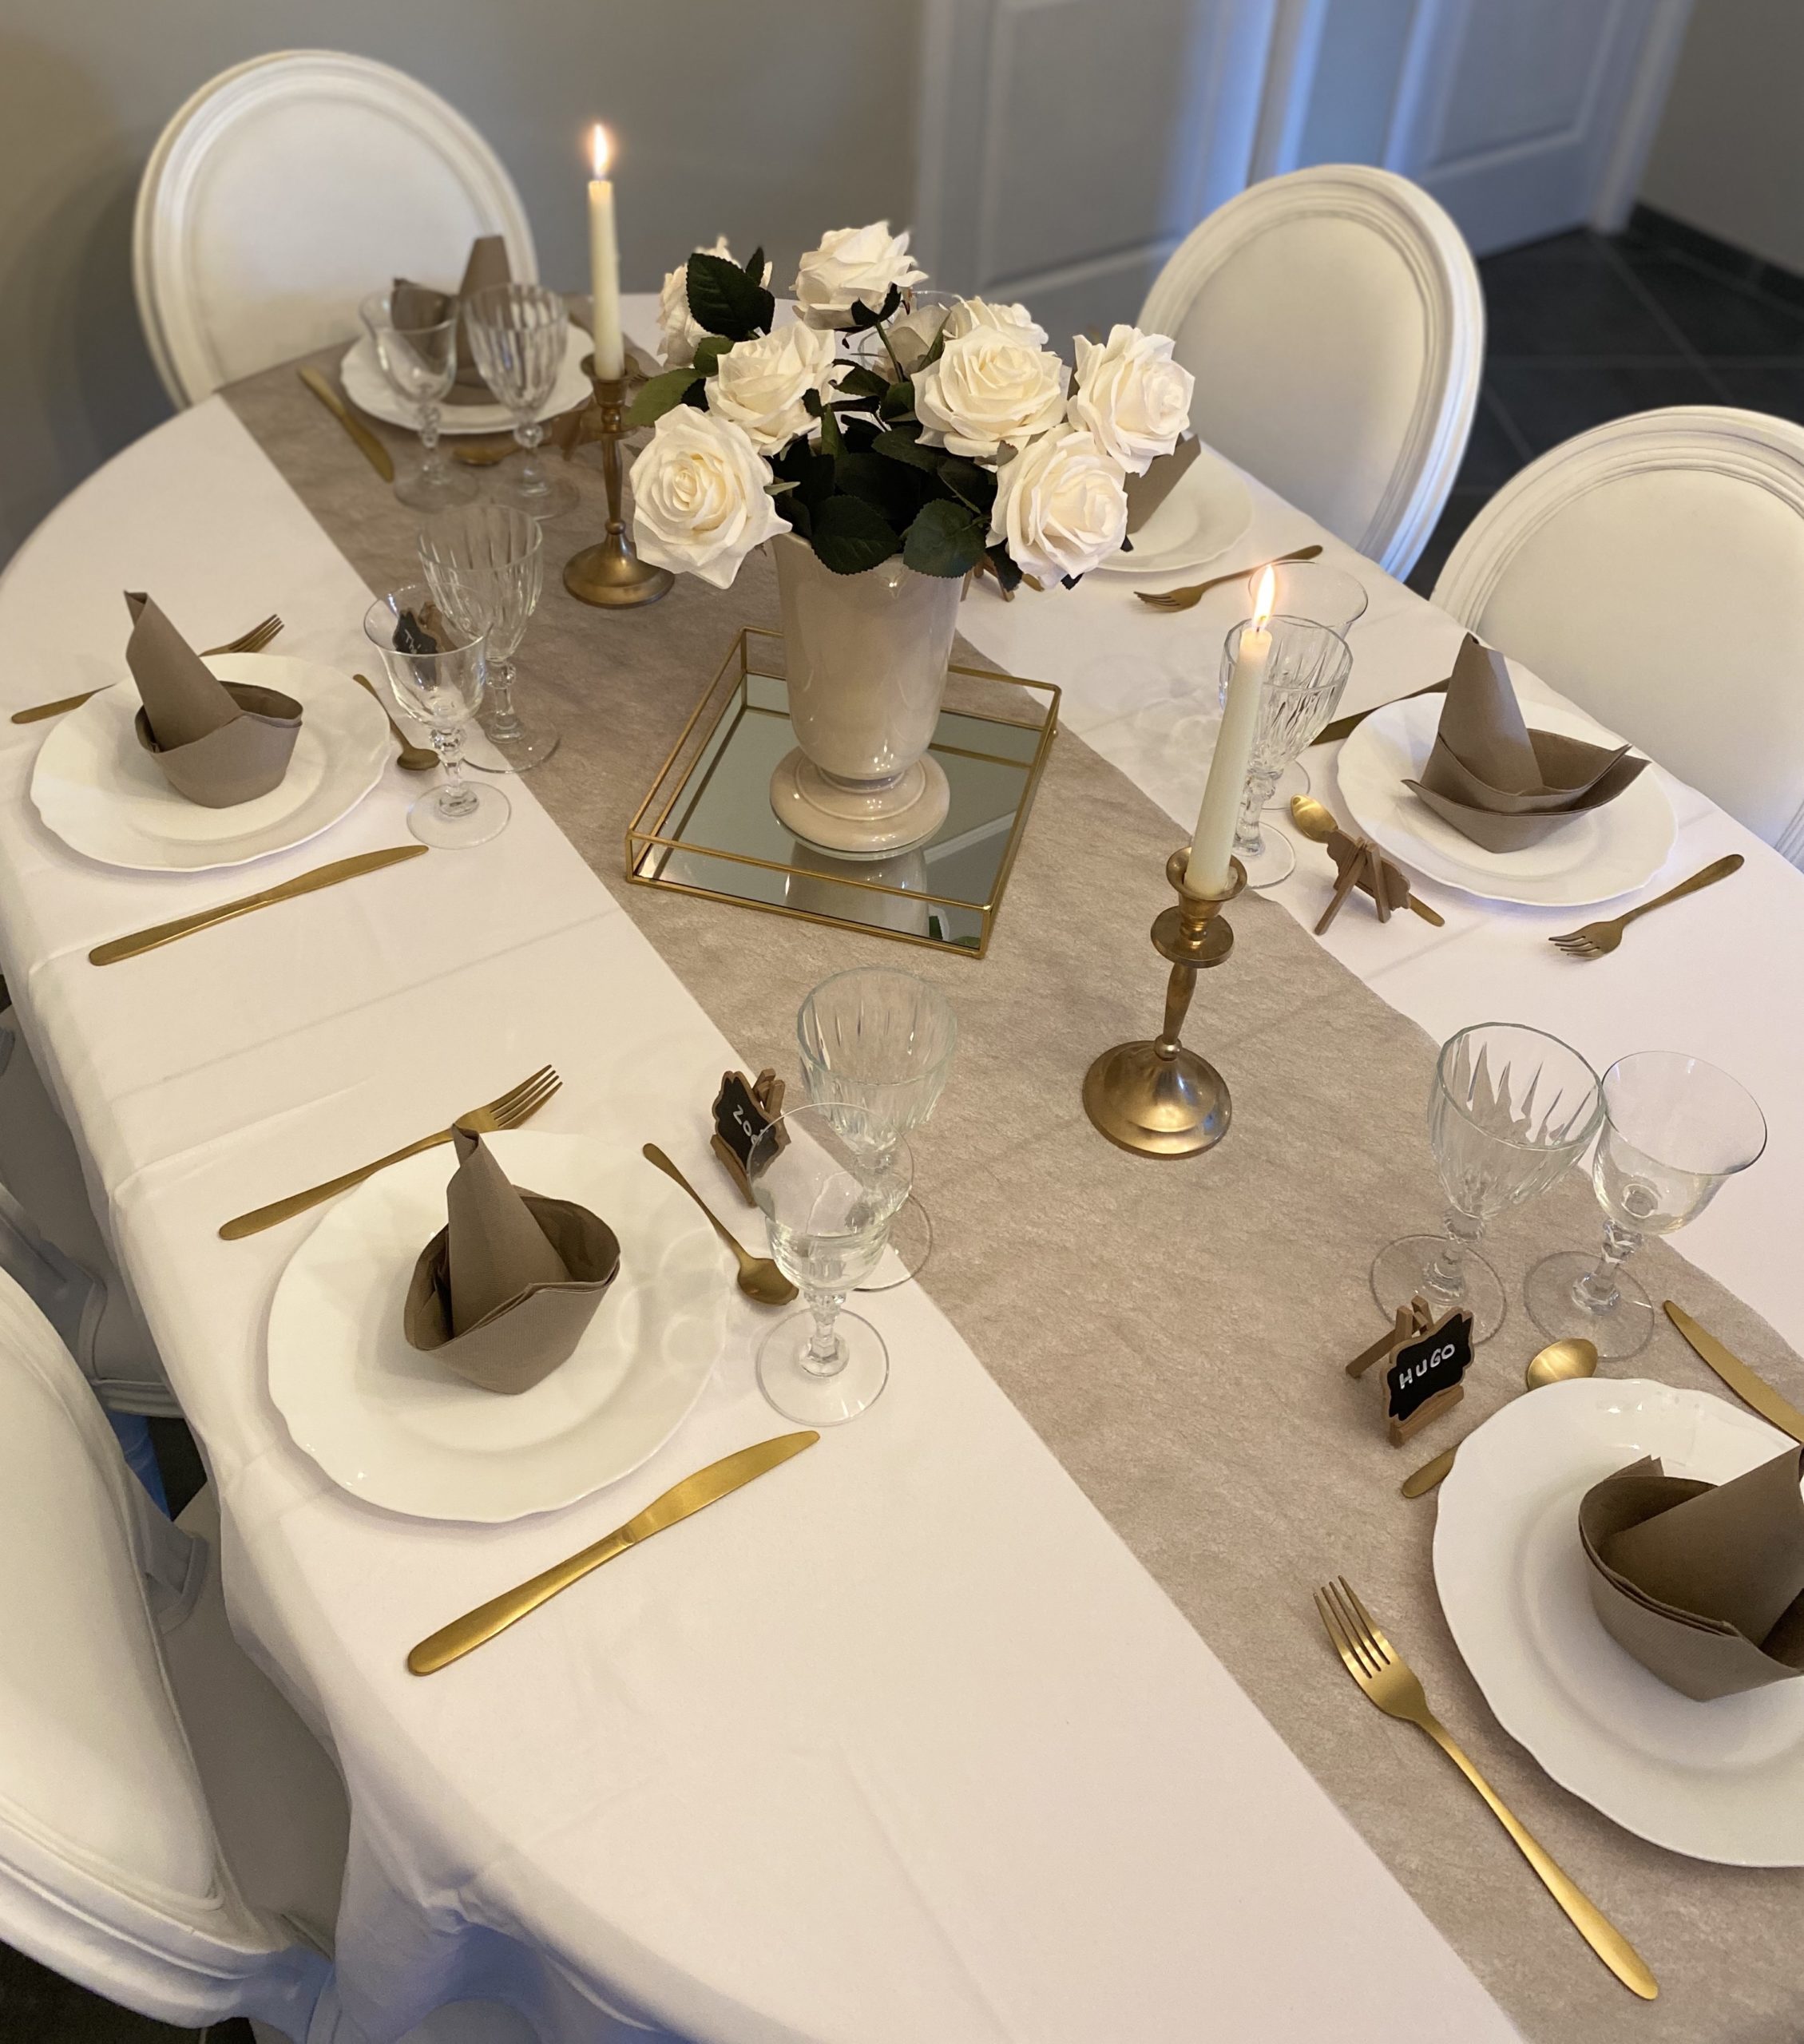 Table dressée à l'occasion d'une réception - C&D Events Wedding planner / Organisatrice d'événements privés Oise et Paris